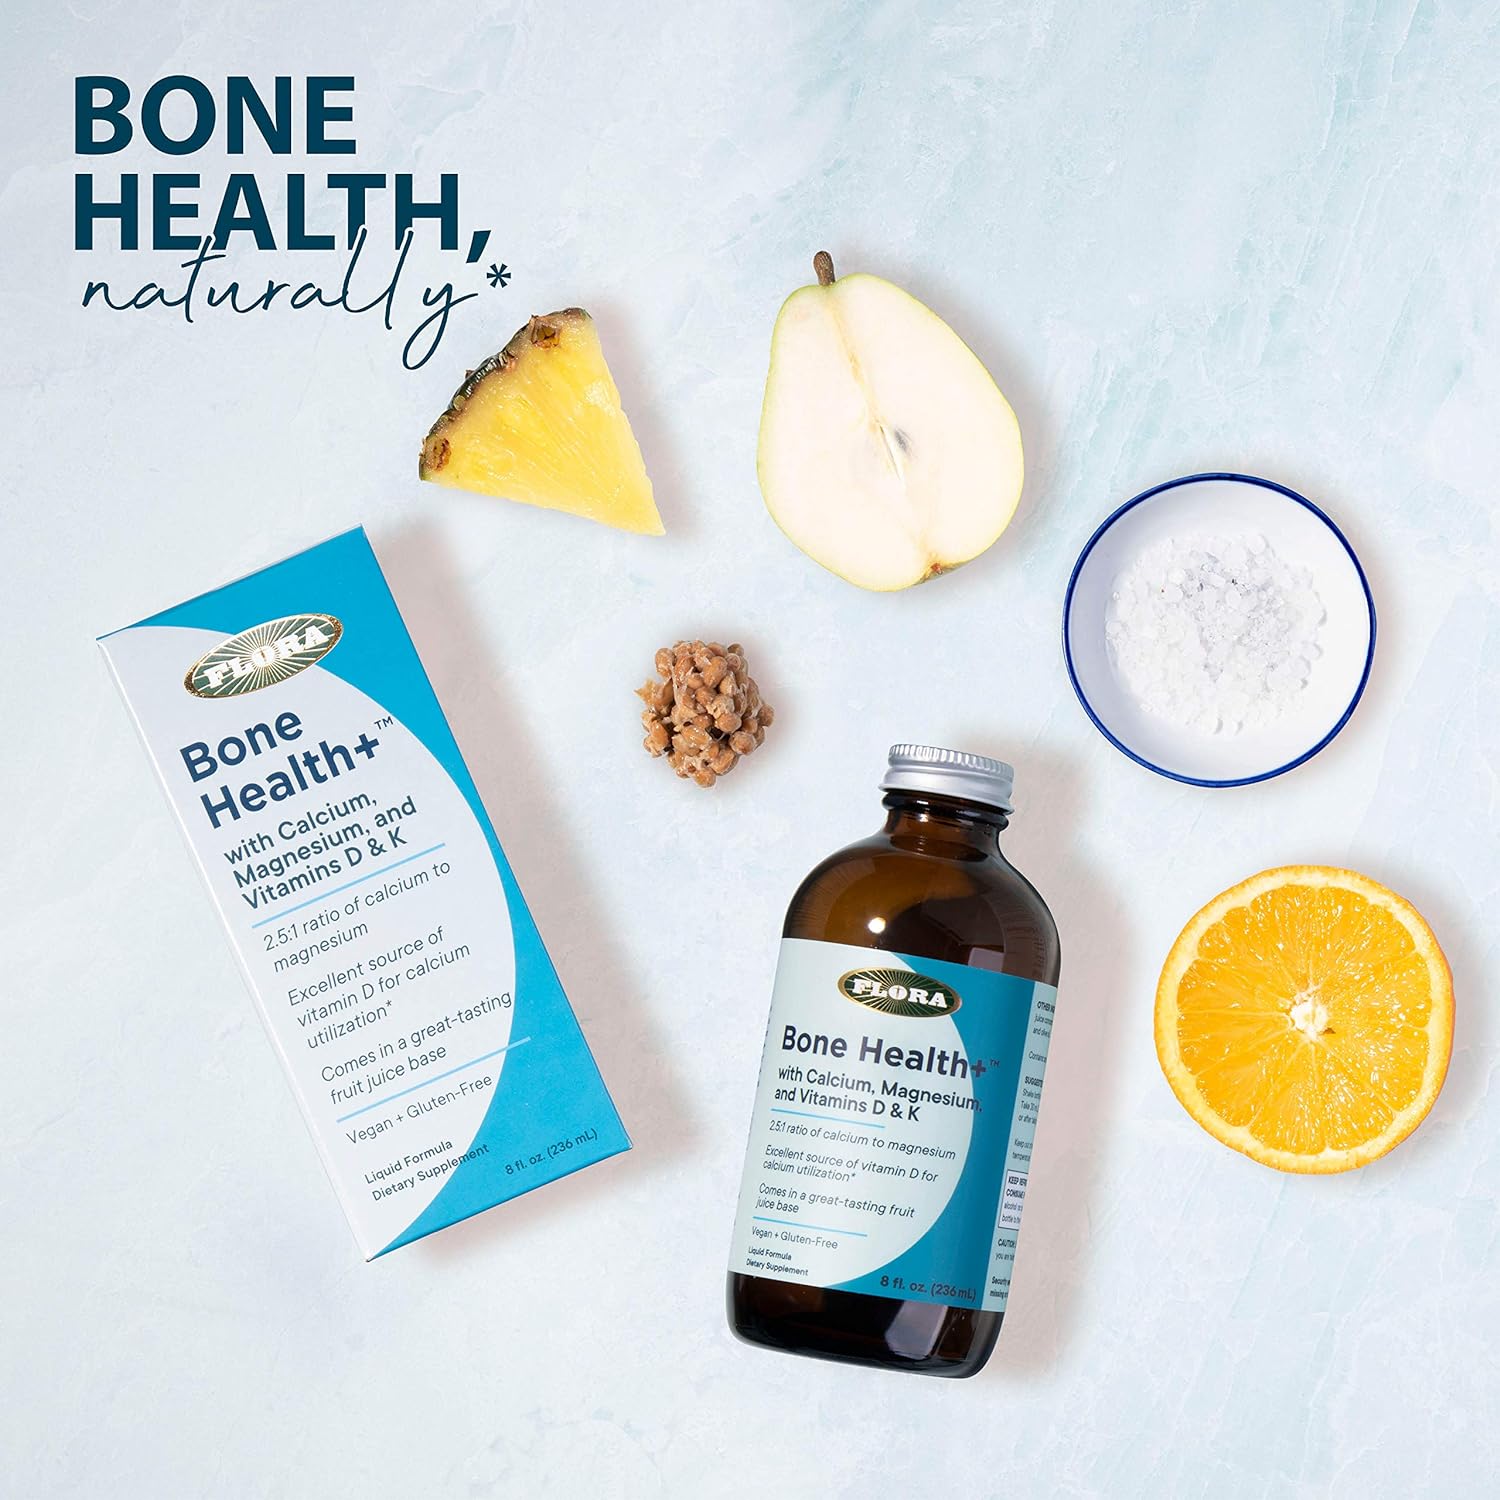 Flora - Bone Health+ with Calcium, Magnesium and Vitamins D & K, 2.5:1